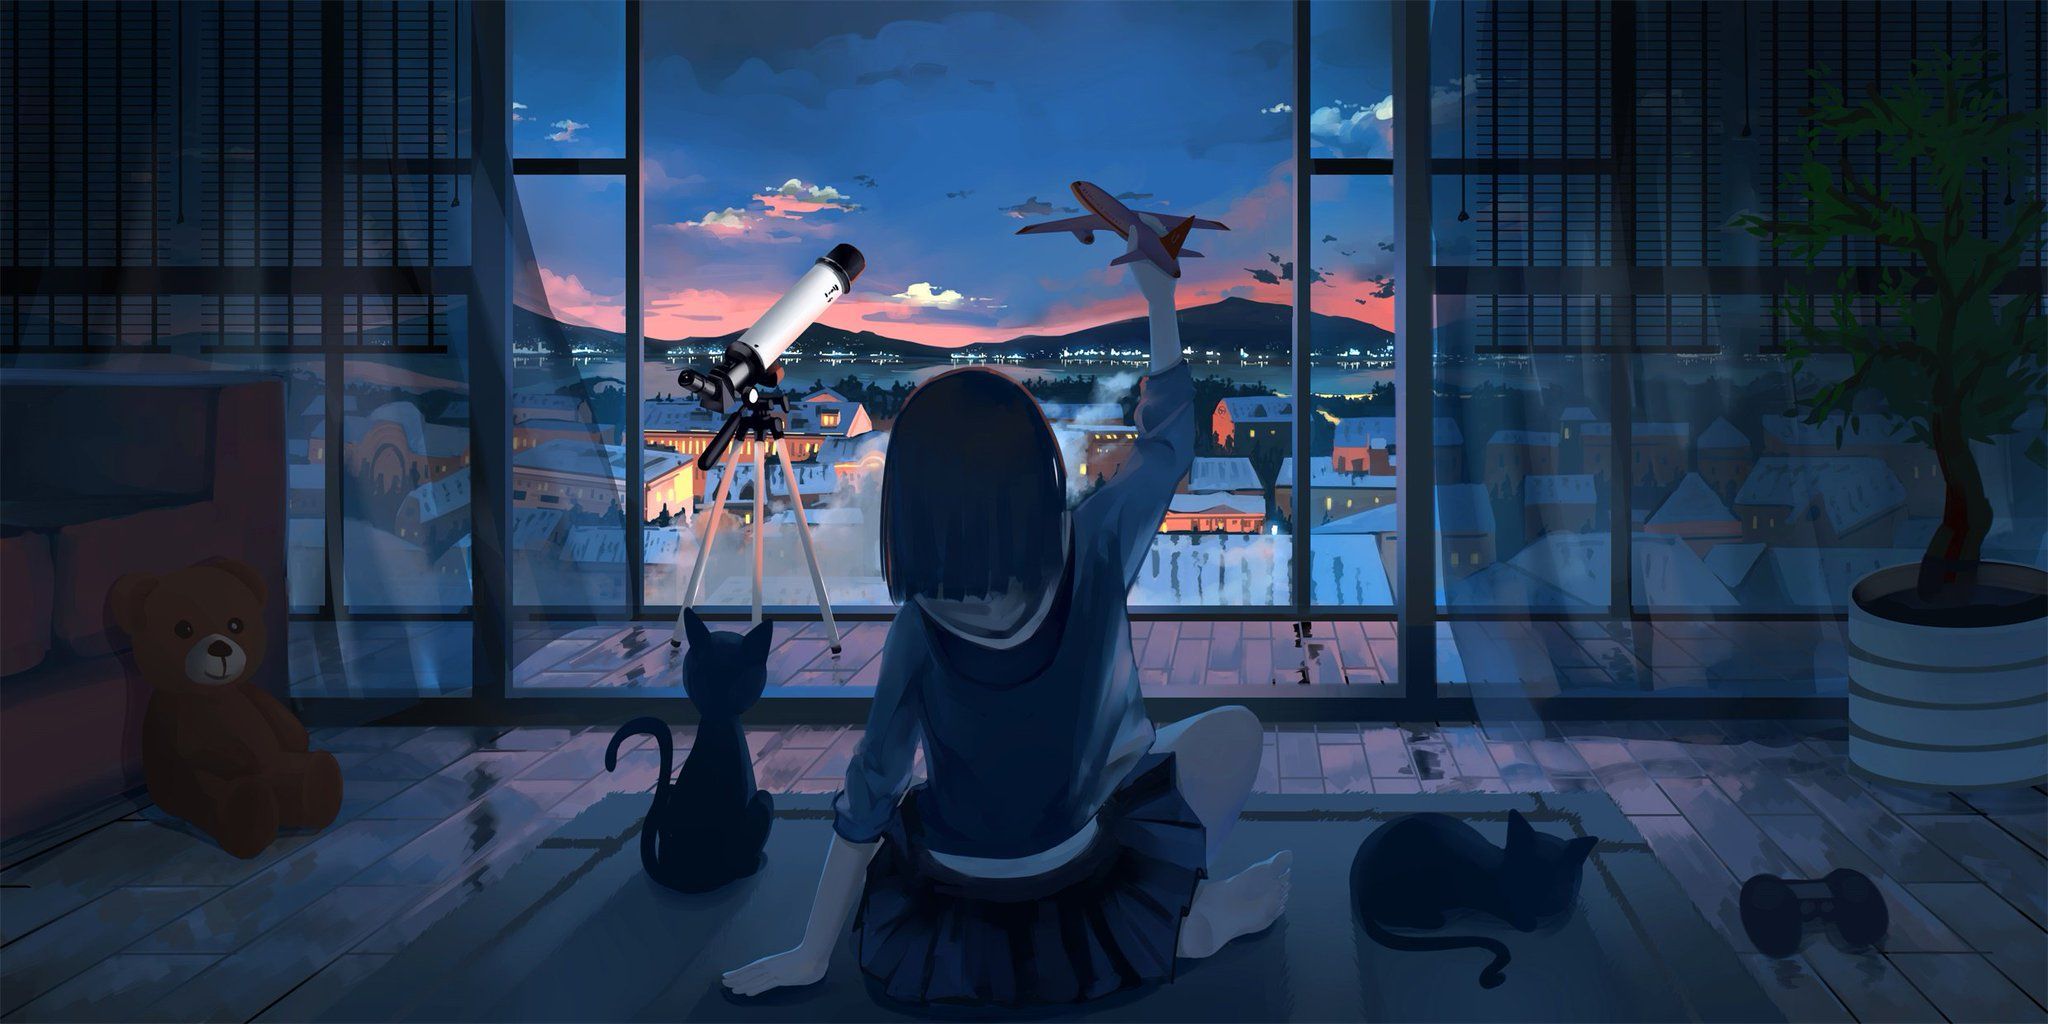 L.L on Twitter. Anime scenery wallpaper, Scenery wallpaper, Anime scenery